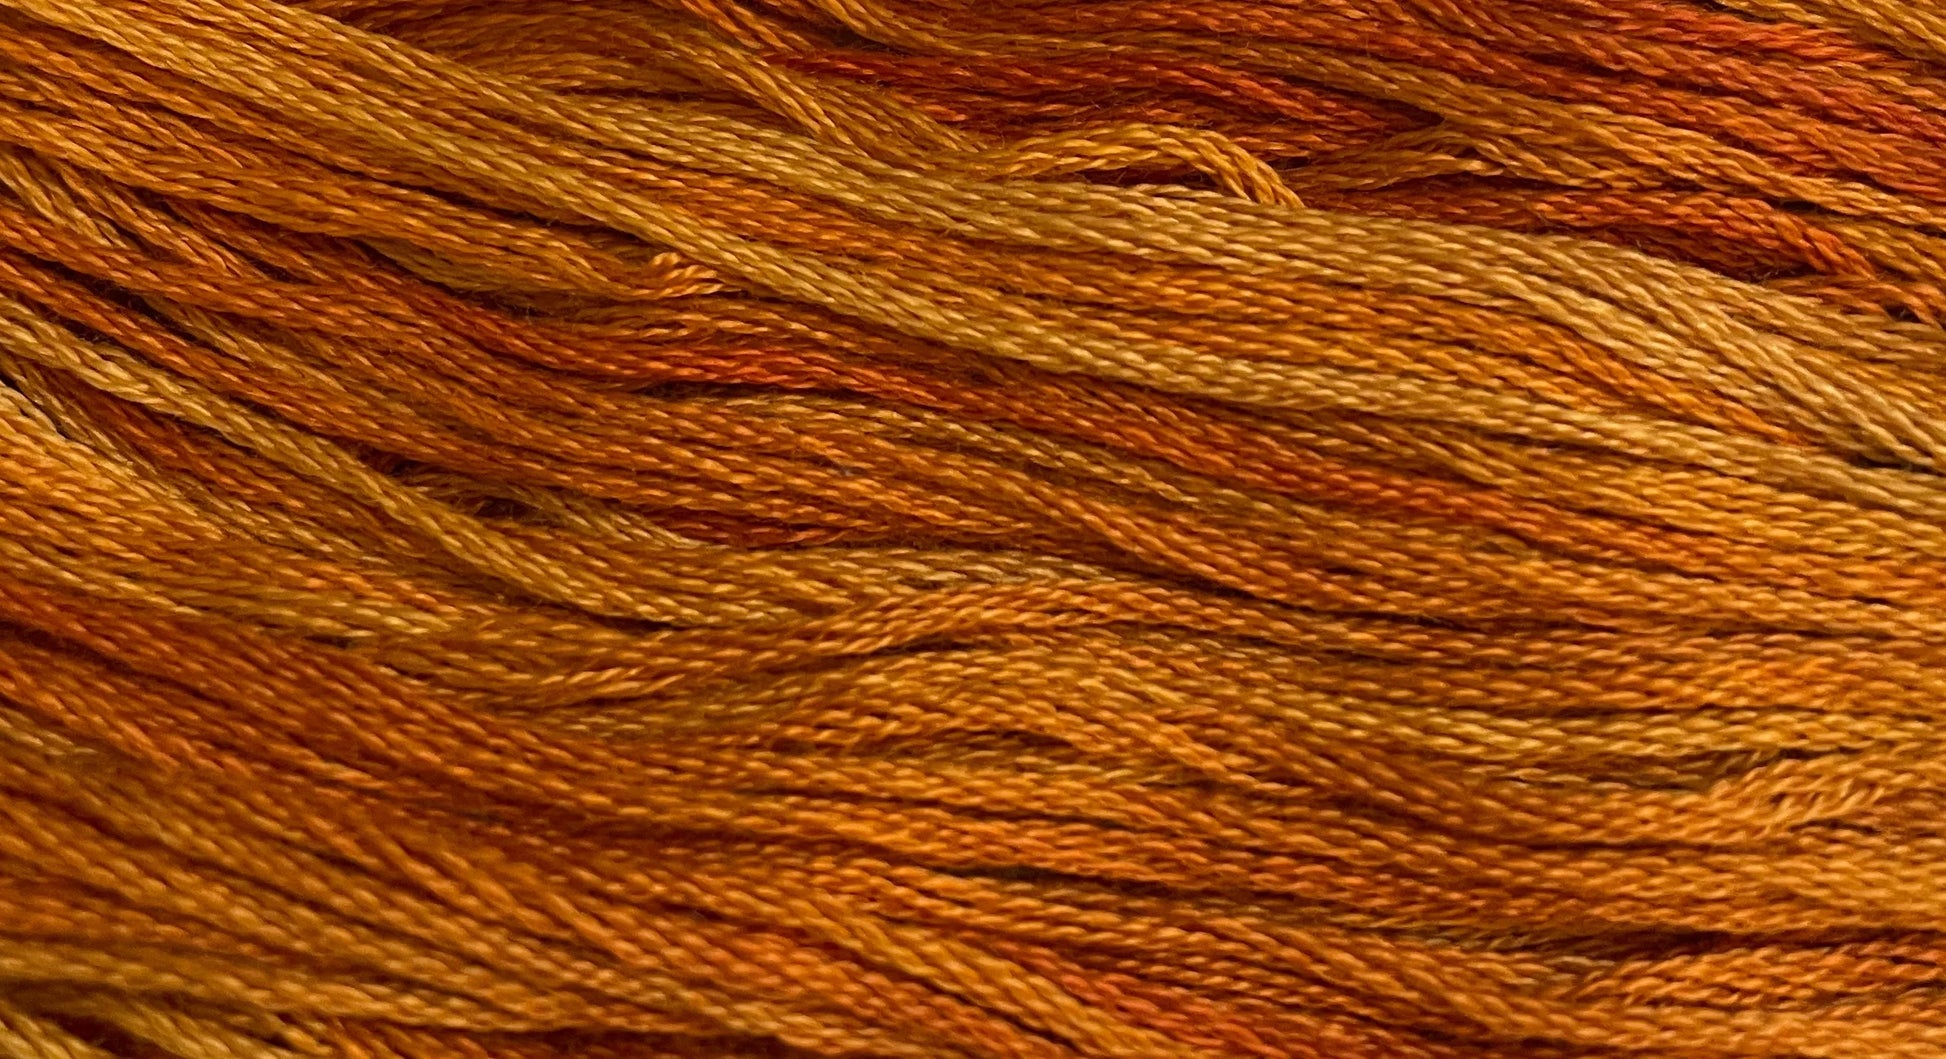 Pumpkin Pie - Gentle Arts Cotton Thread - 5 yard Skein - Cross Stitch Floss, Thread & Floss, Thread & Floss, The Crafty Grimalkin - A Cross Stitch Store